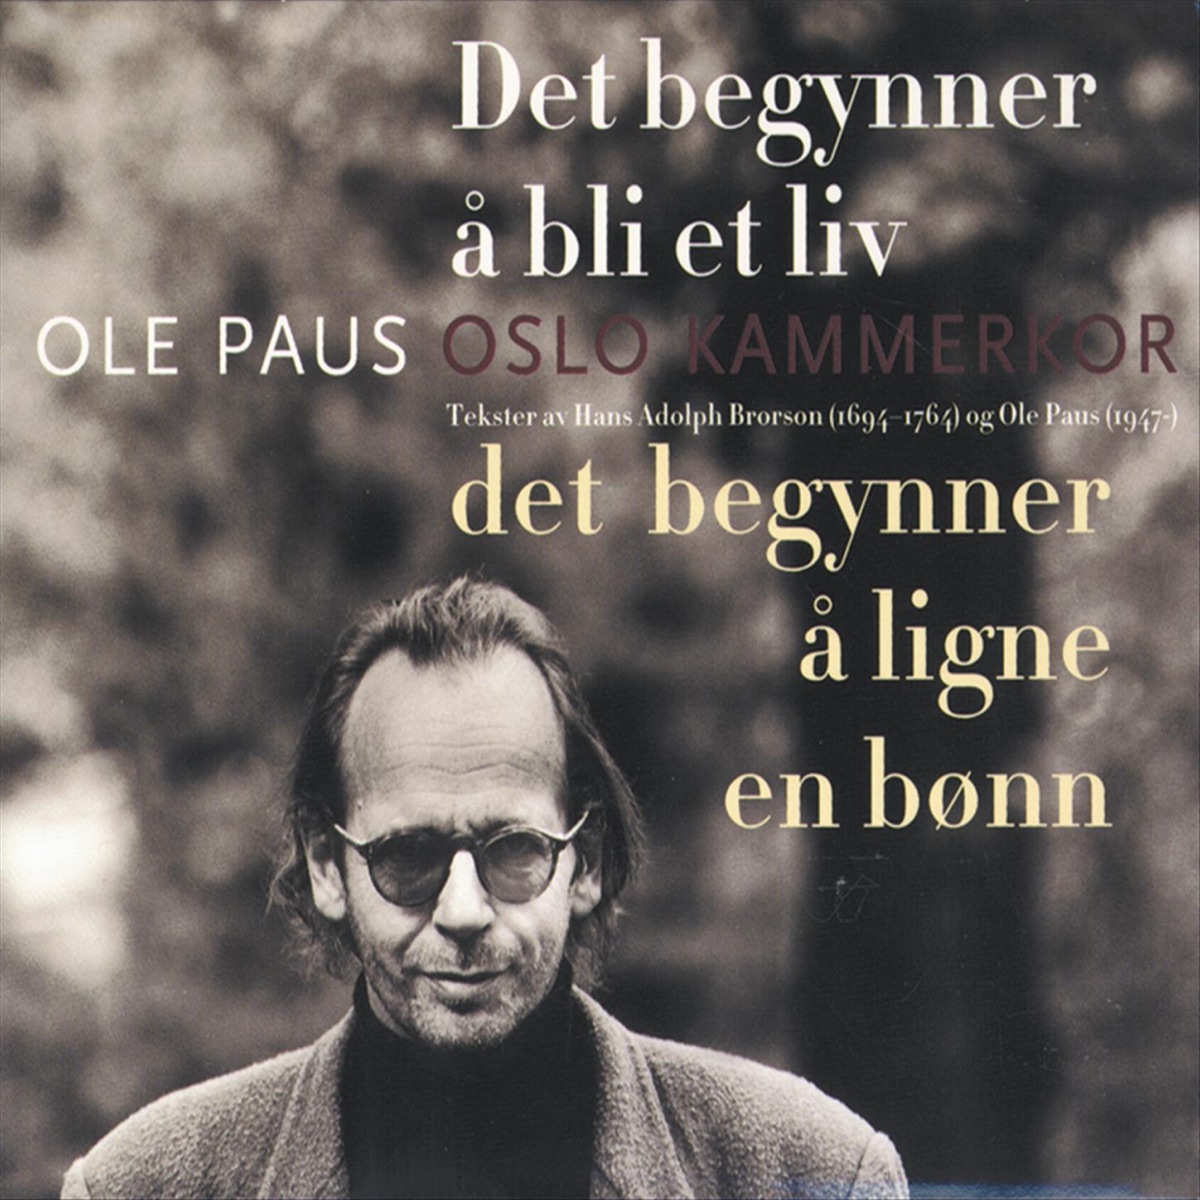 Det begynner å bli et liv - Det begynner å ligne en bønn - Album by Oslo  Kammerkor & Ole Paus - Apple Music